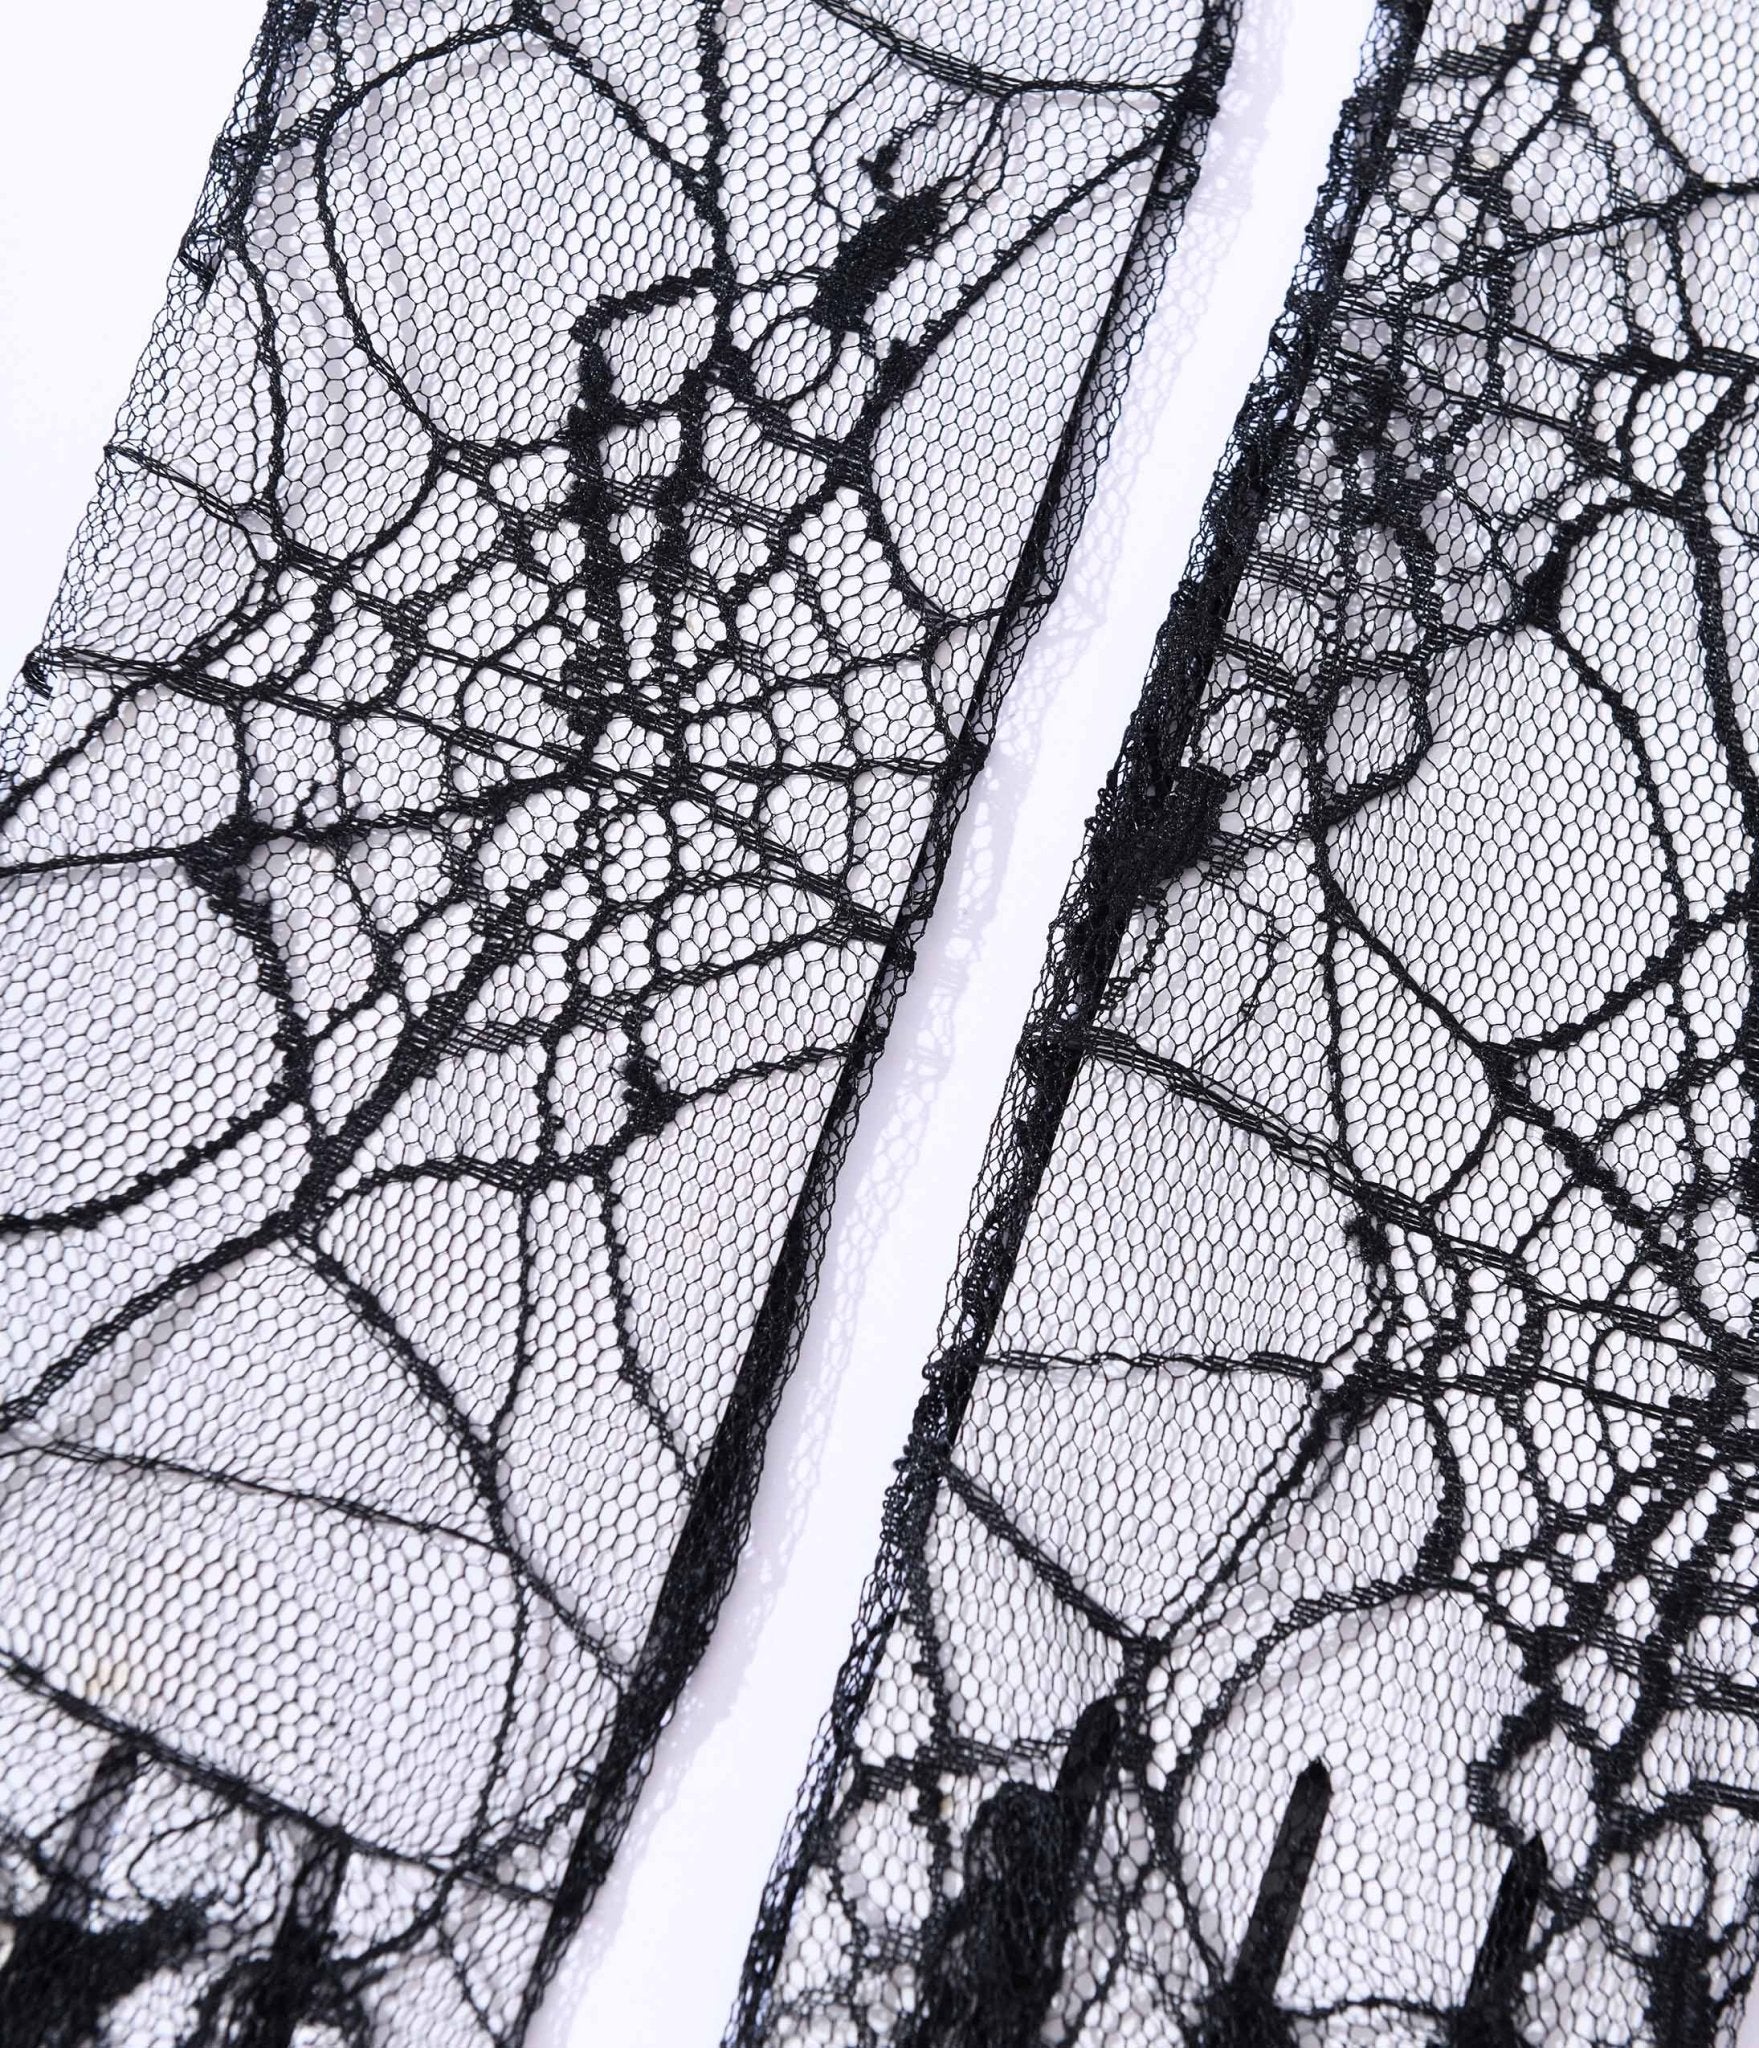 Black Spider Web Mesh Gloves - Unique Vintage - Womens, HALLOWEEN, ACCESSORIES